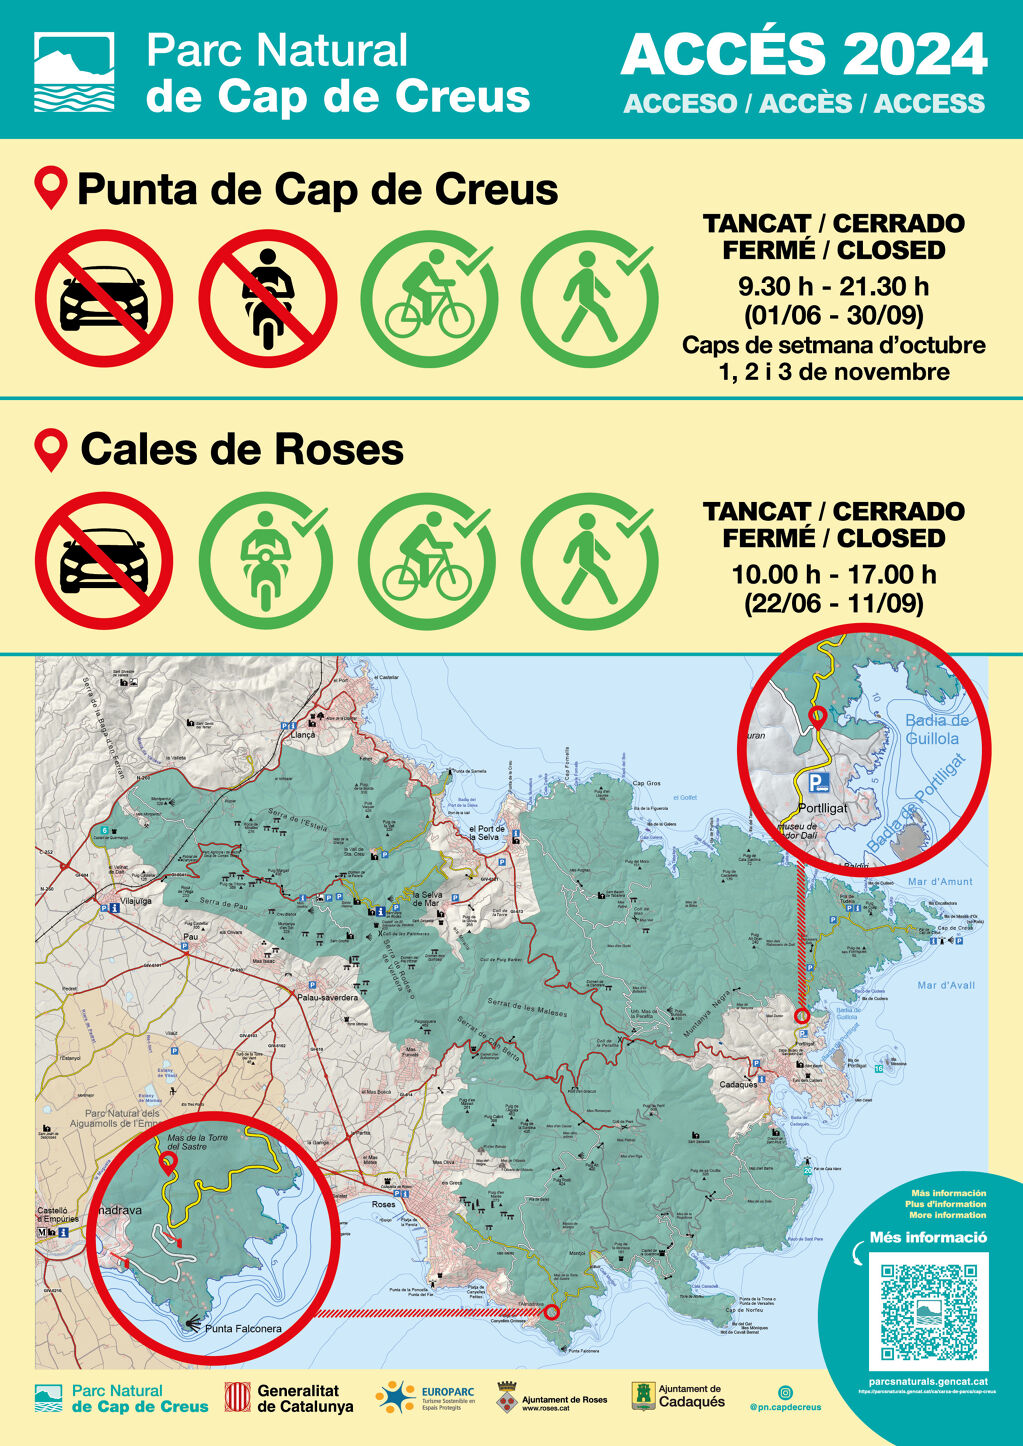 El acceso de vehículos al PN de Cabo de Creus desde Roses, cerrado del 22 de junio al 11 de septiembre